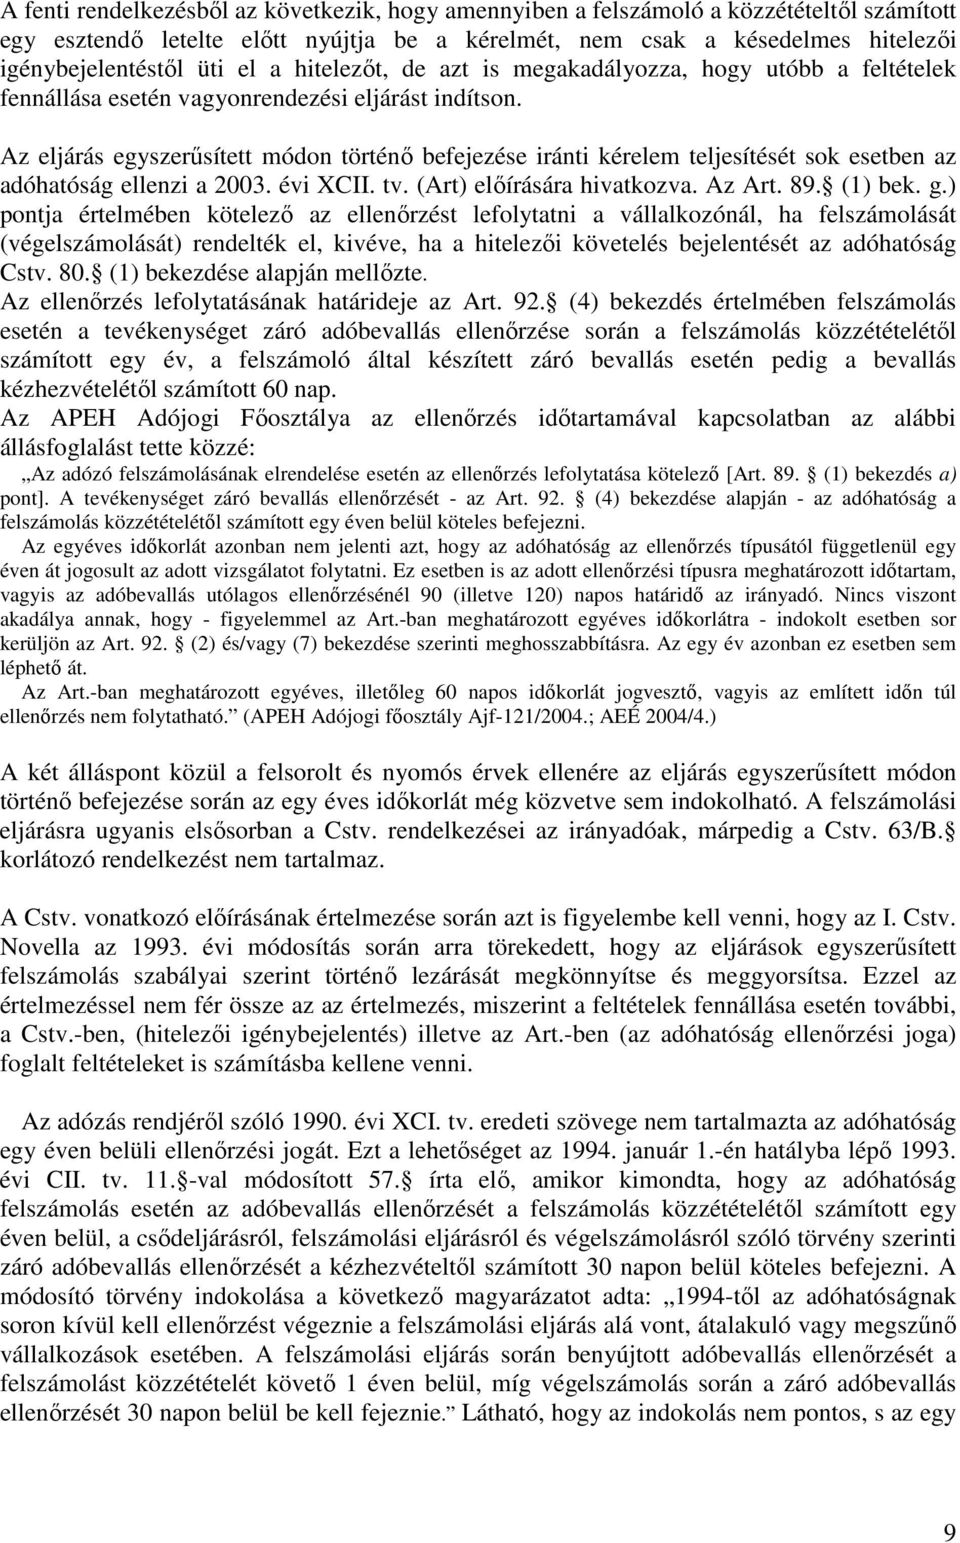 Az eljárás egyszerősített módon történı befejezése iránti kérelem teljesítését sok esetben az adóhatóság ellenzi a 2003. évi XCII. tv. (Art) elıírására hivatkozva. Az Art. 89. (1) bek. g.